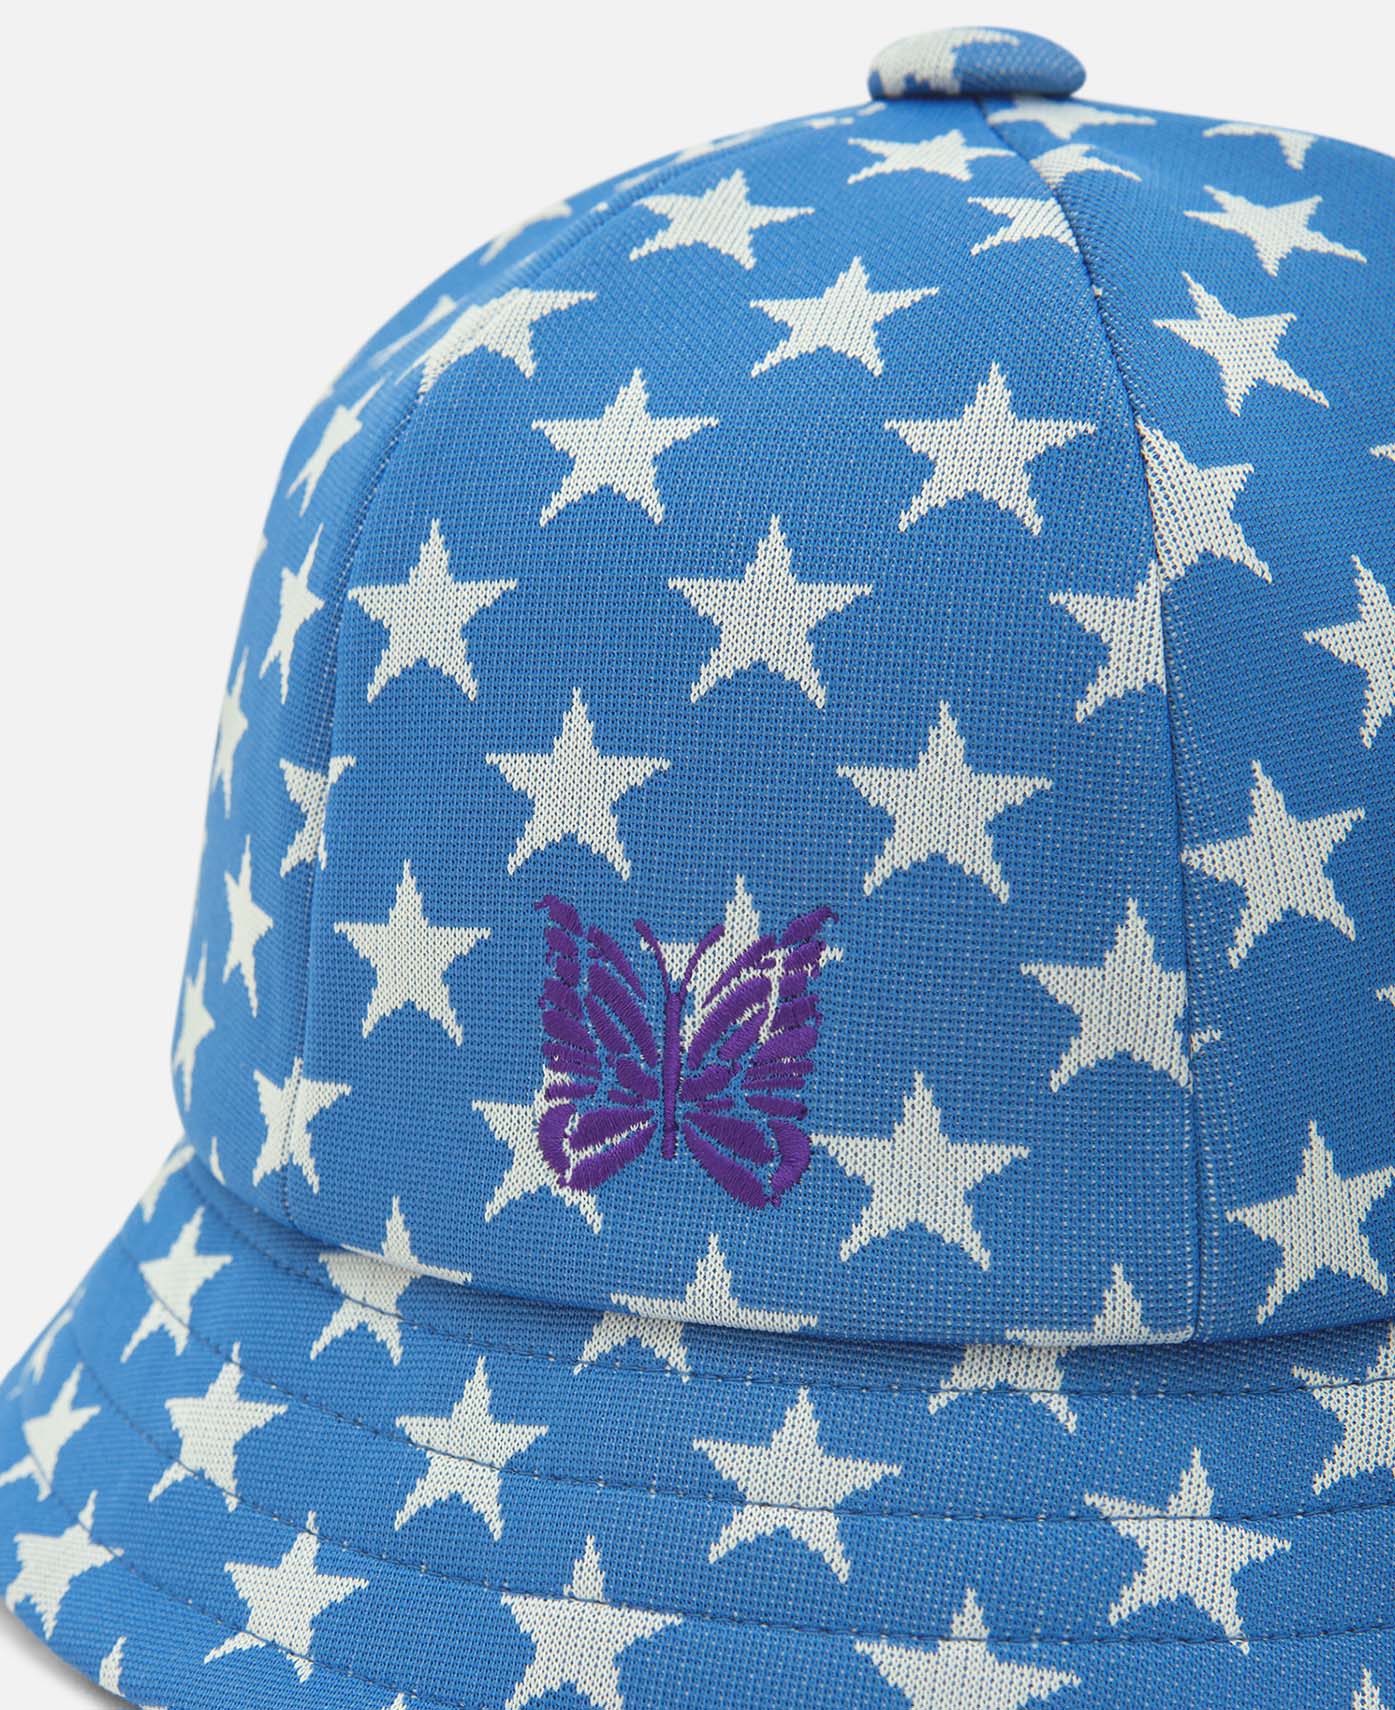 Needles - Bermuda Hat (Blue) – JUICESTORE